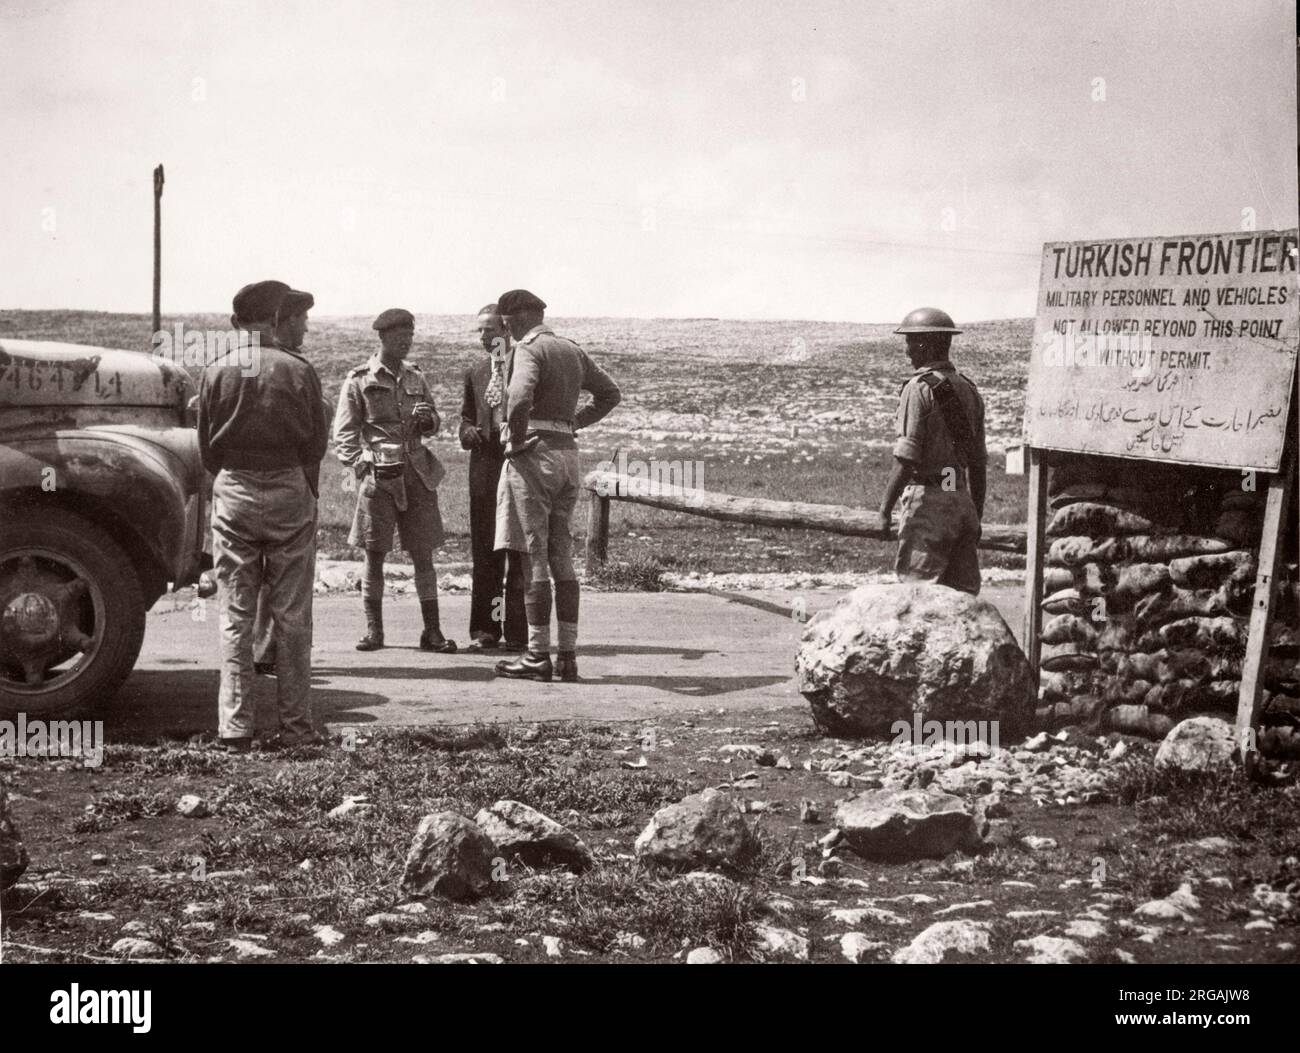 1943 - Grenzübergang bei Bab el Hawa zwischen Syrien und der Türkei Foto eines während des Zweiten Weltkriegs in Ostafrika und im Nahen Osten stationierten britischen Armeeoffiziers Stockfoto